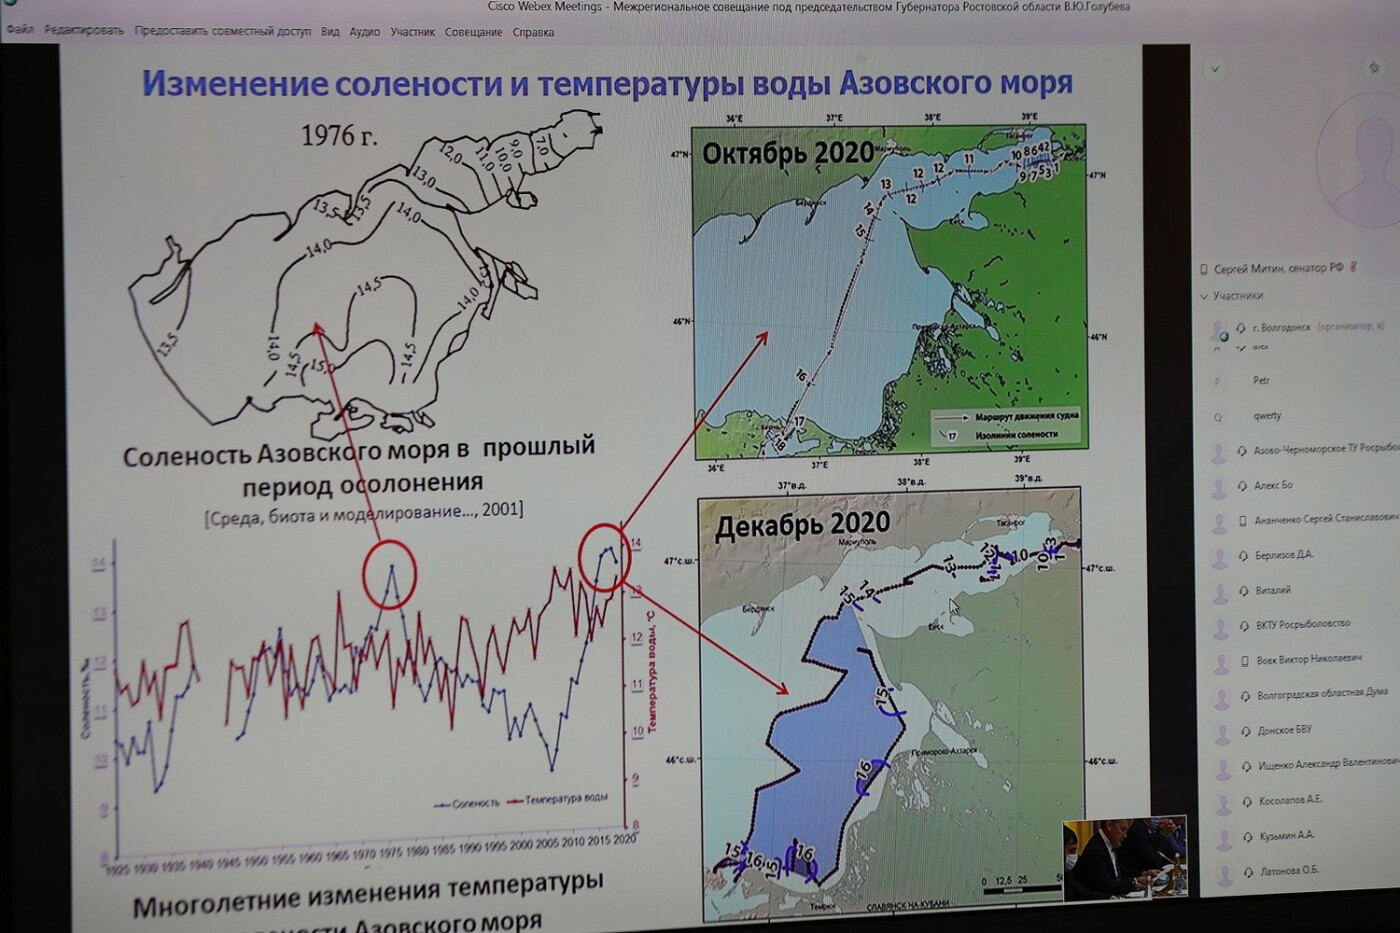 Соленость Азовского моря достигла исторического максимума